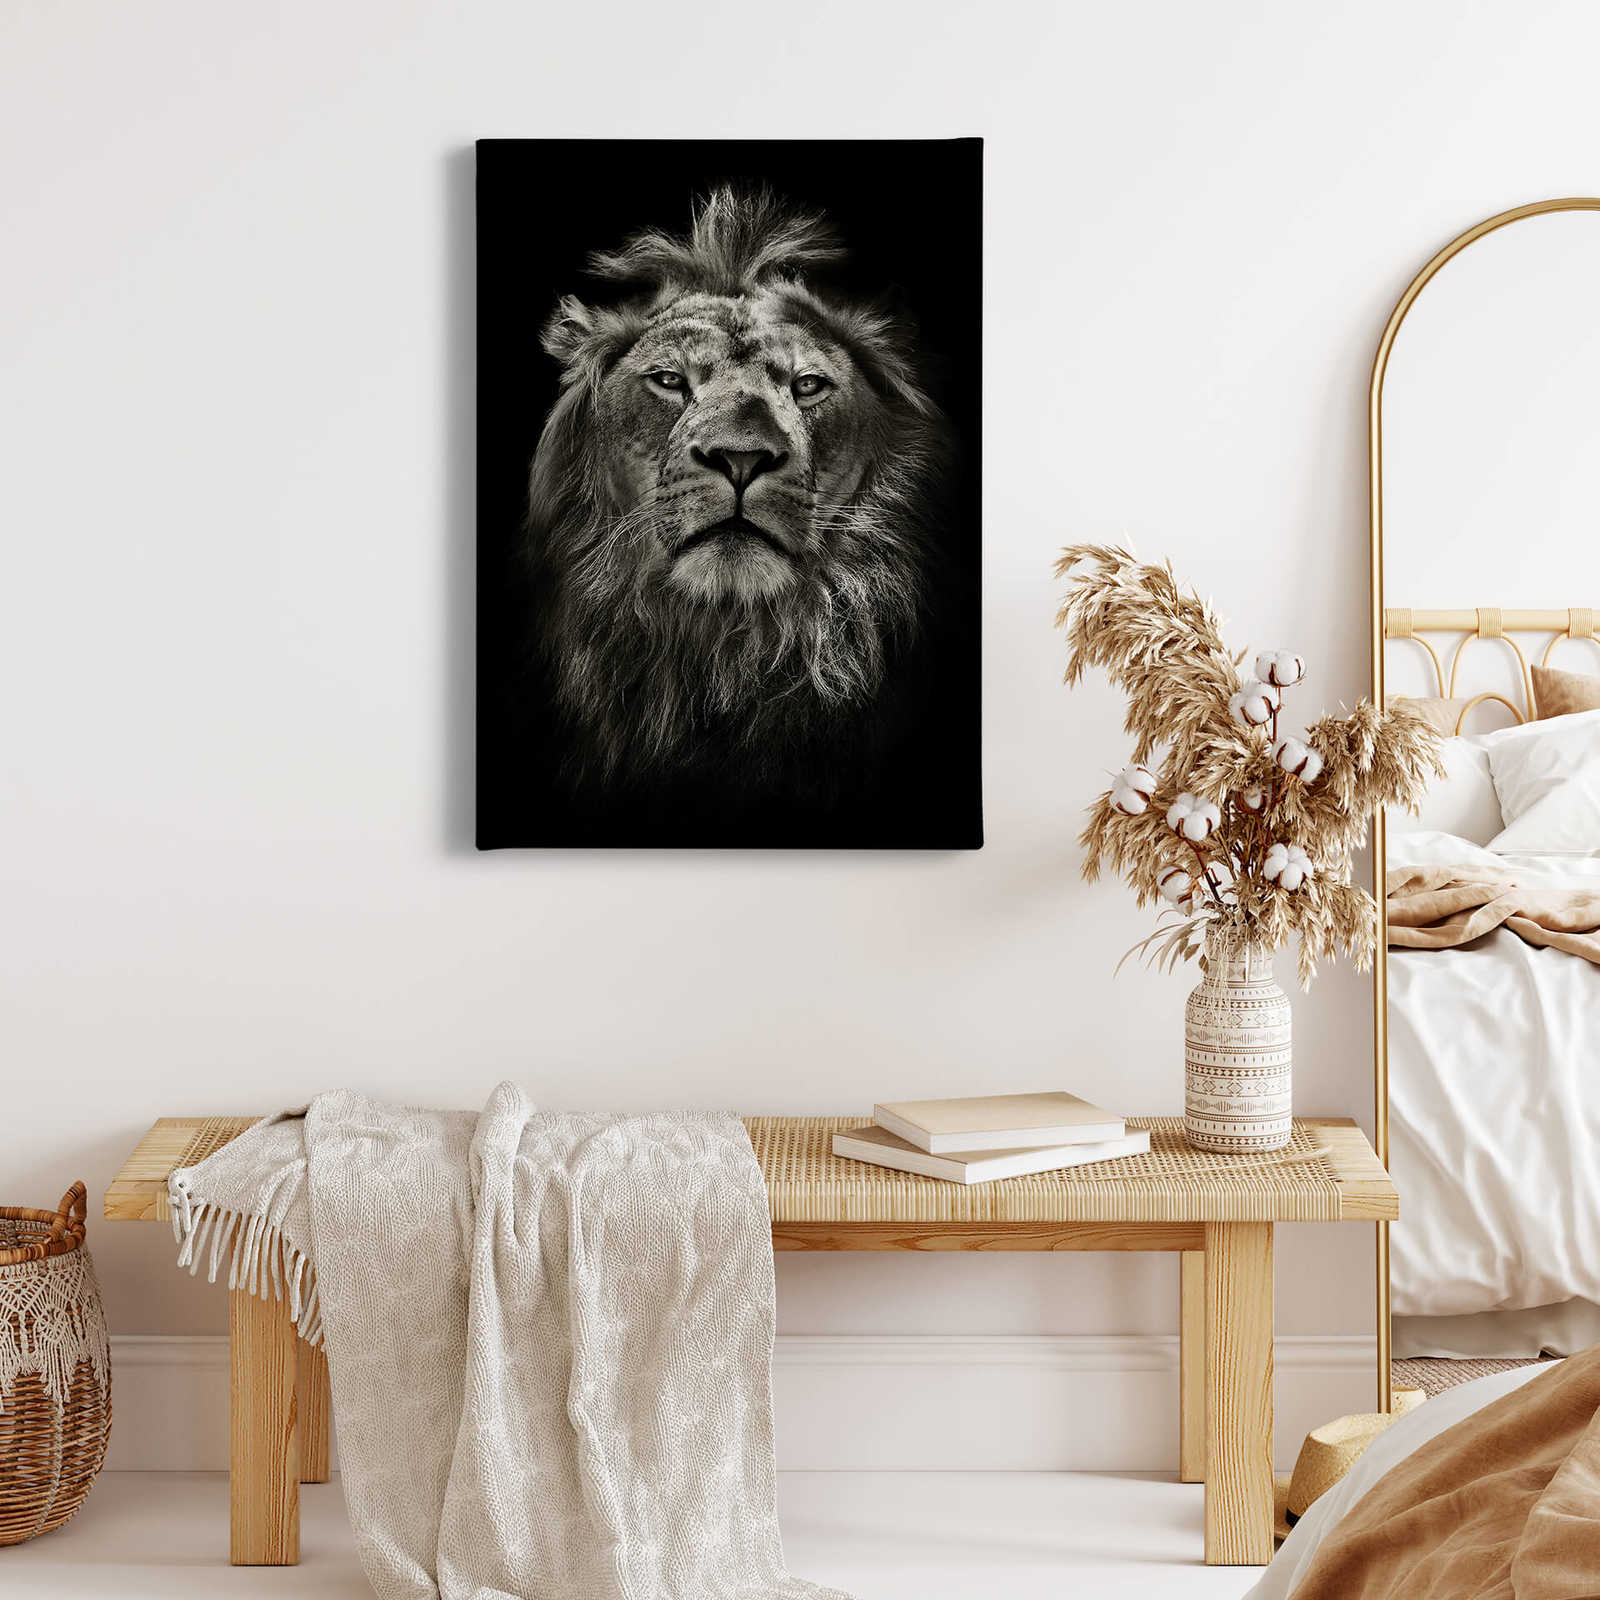             Canvas print Lion portrait – black and white
        